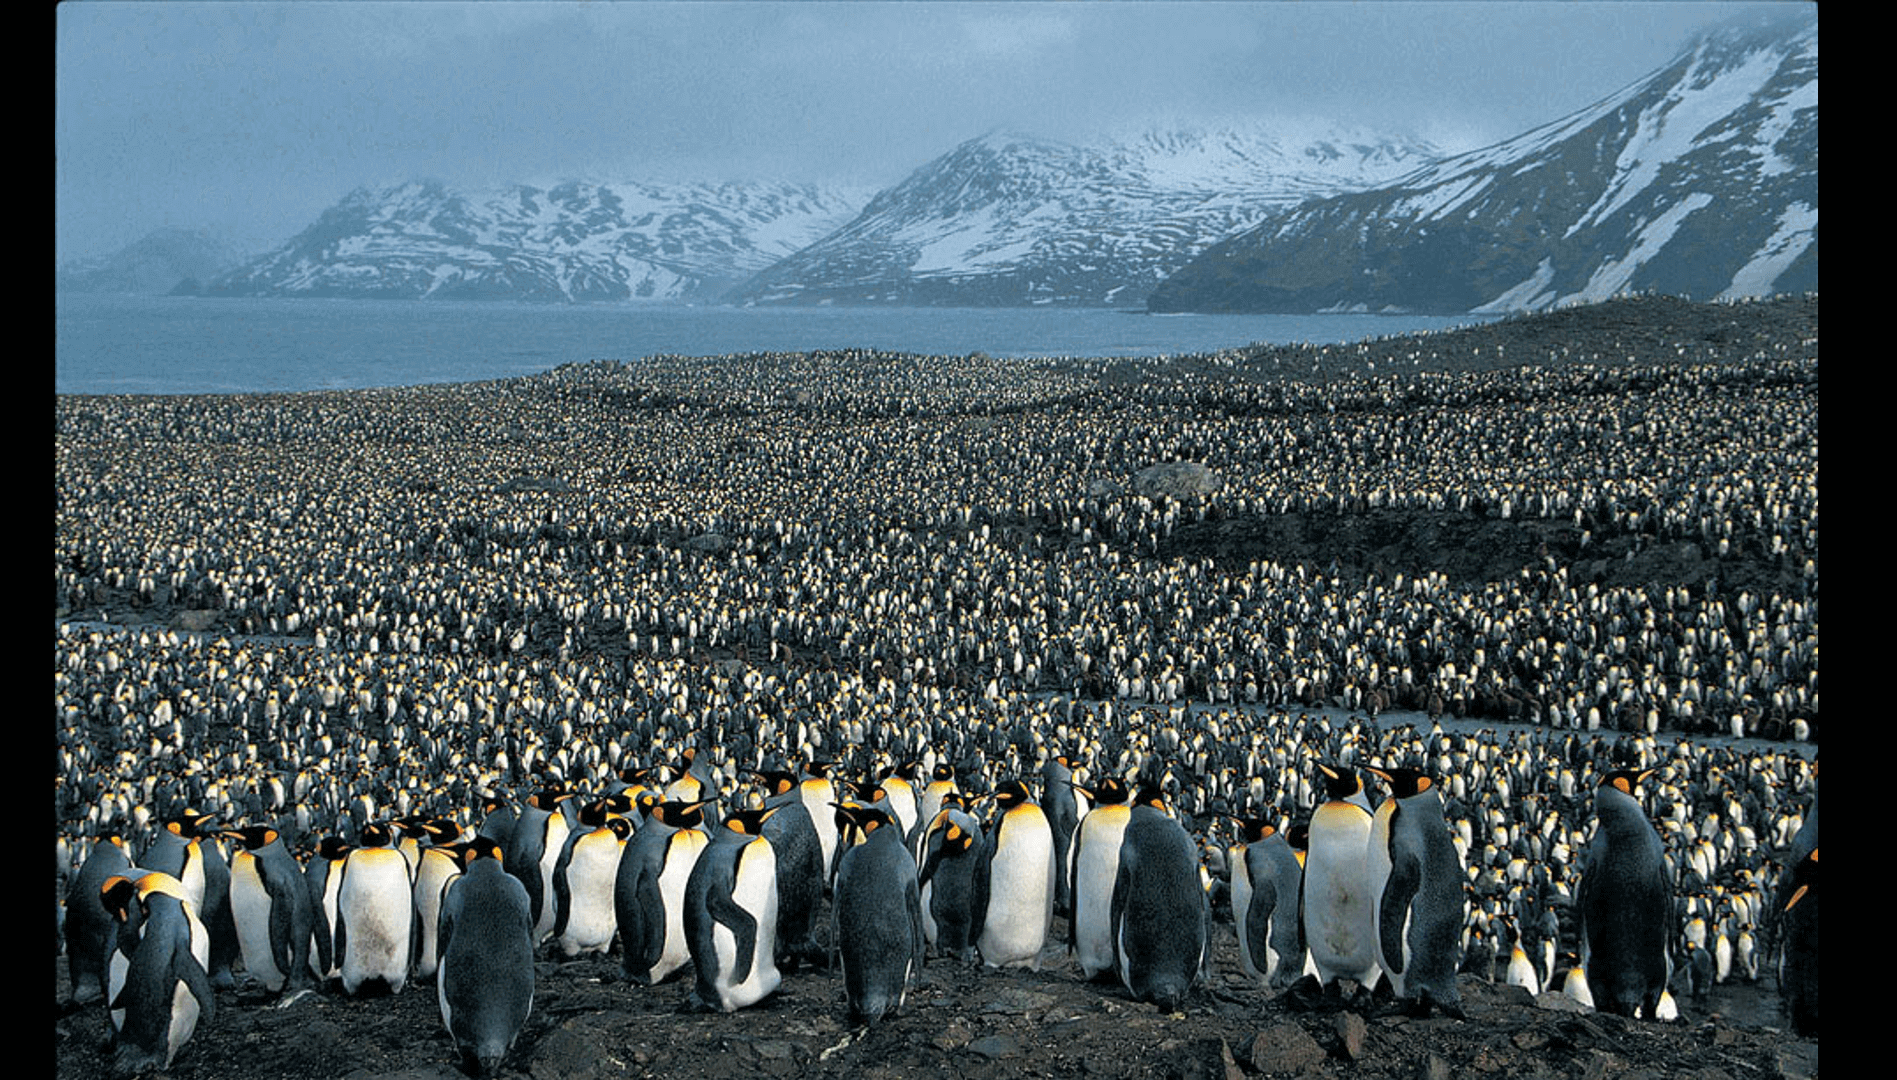 Императорский пингвин чемпион по нырянию среди пингвинов. Ушуайя Антарктида. Колония пингвинов в Антарктиде. Императорский Пингвин в Антарктиде. Колония императорских пингвинов в Антарктиде.